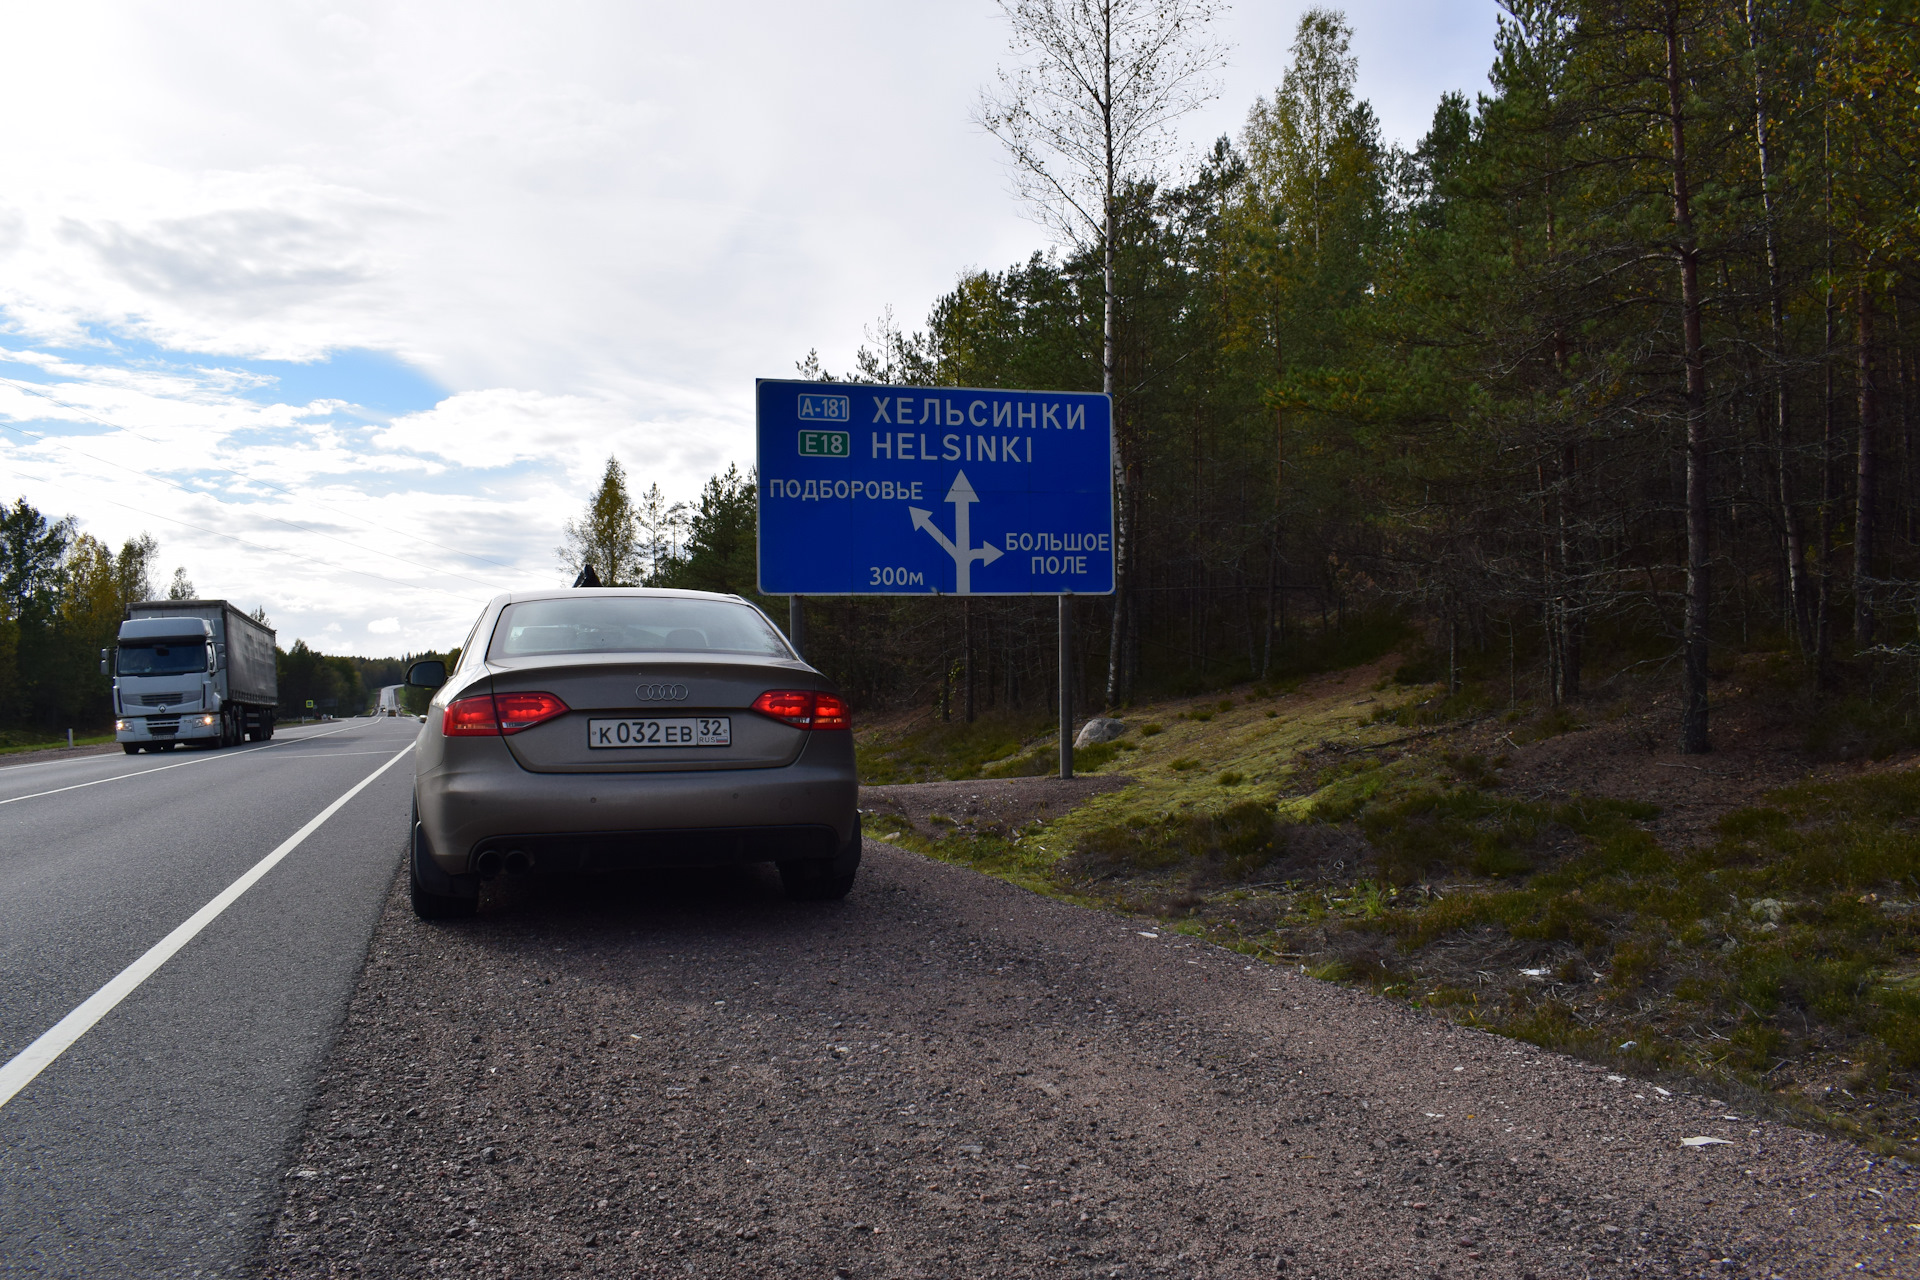 Поездка в финляндию на машине в 2021 — что нужно знать